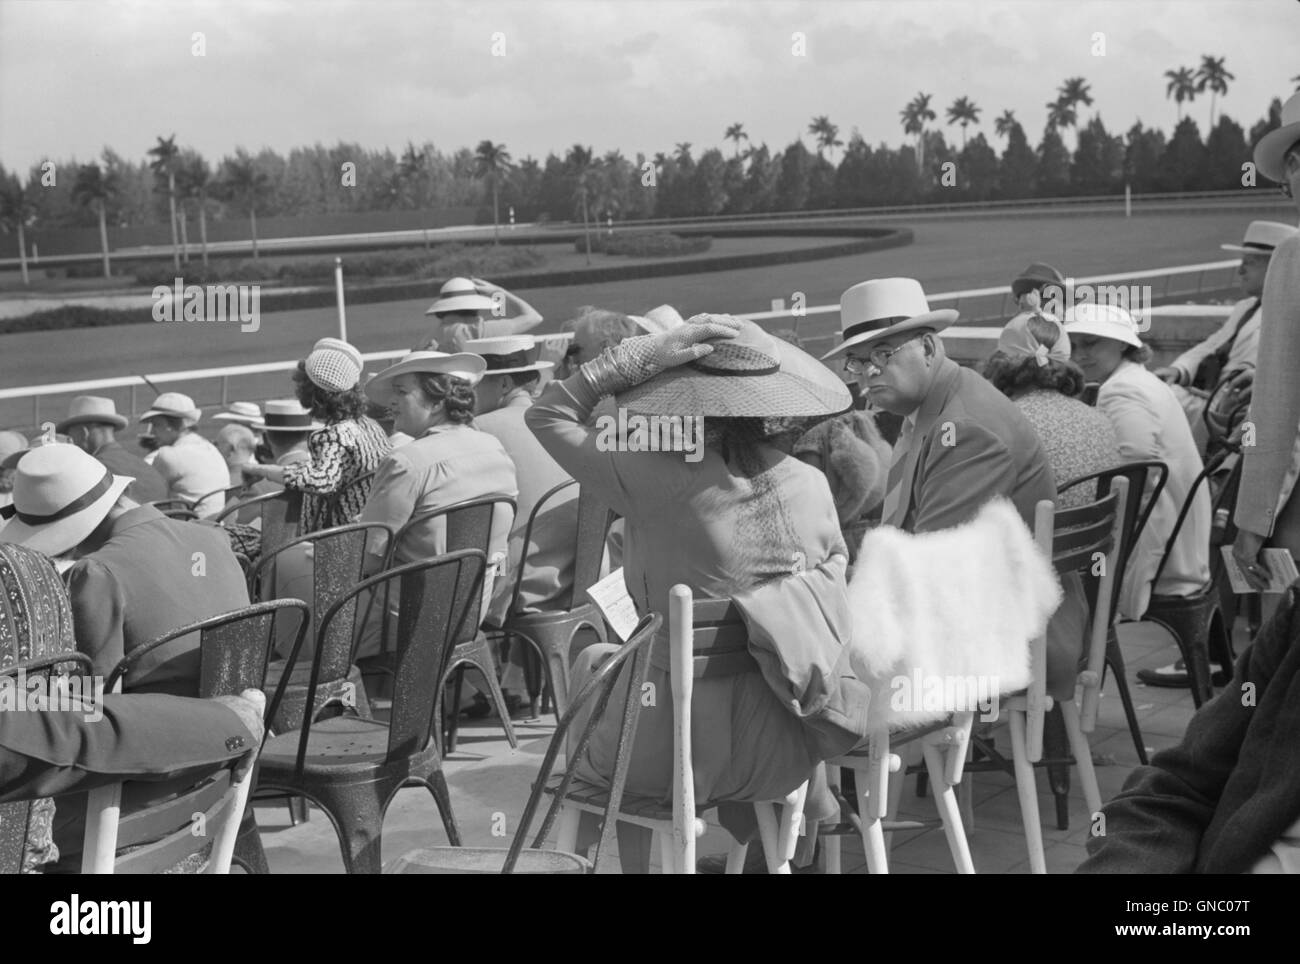 Les spectateurs à course de chevaux, Hialeah Park, Miami, Floride, USA, Marion Post Wolcott pour Farm Security Administration, Mars 1939 Banque D'Images